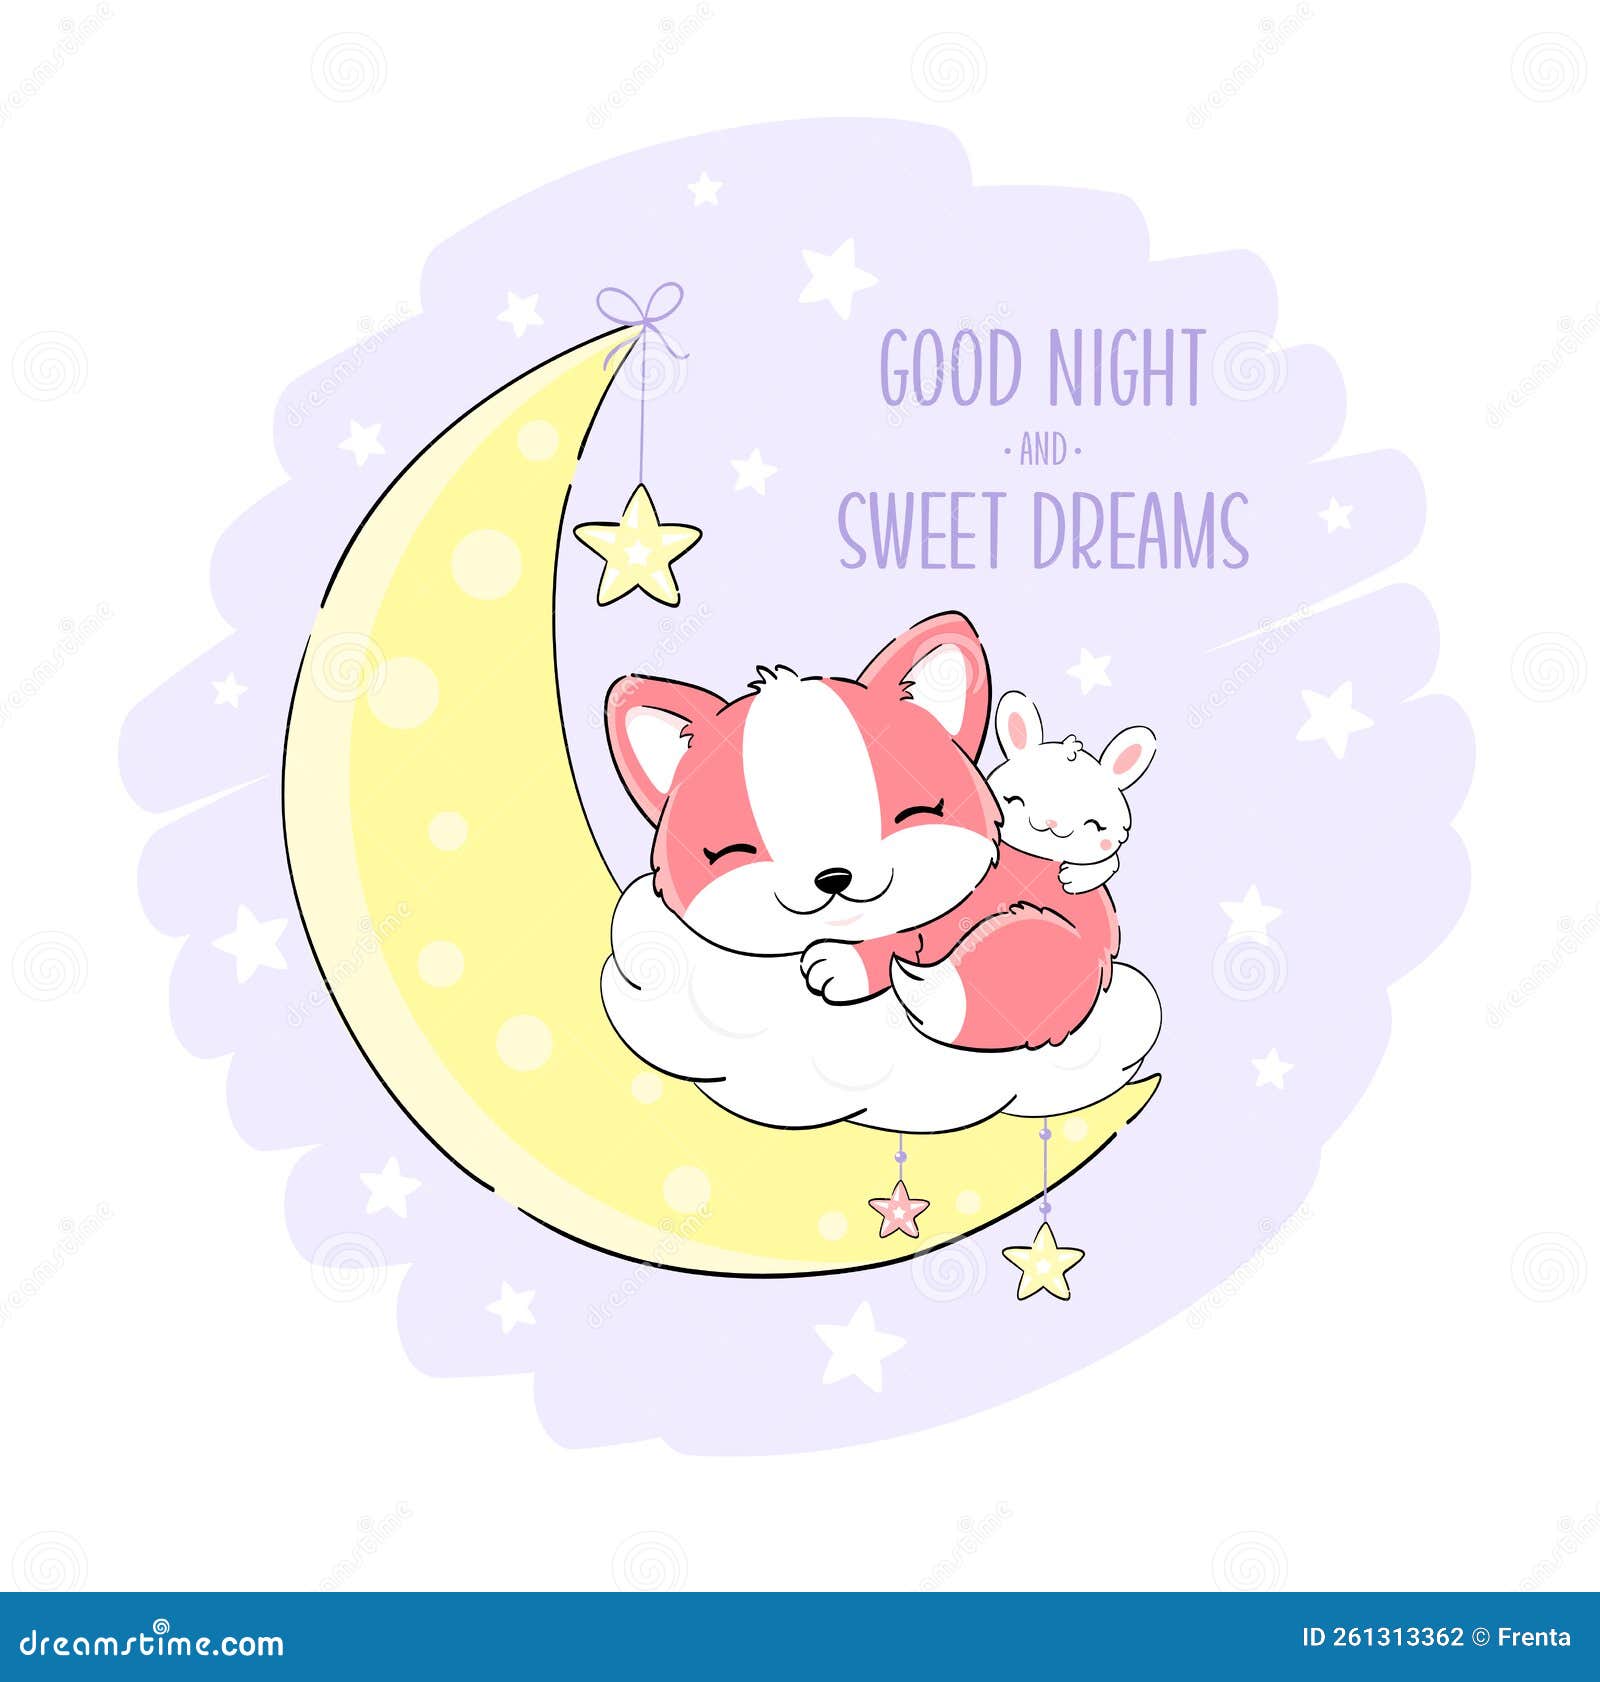 Buenas Noches Stock Illustrations – 21 Buenas Noches Stock Illustrations,  Vectors & Clipart - Dreamstime